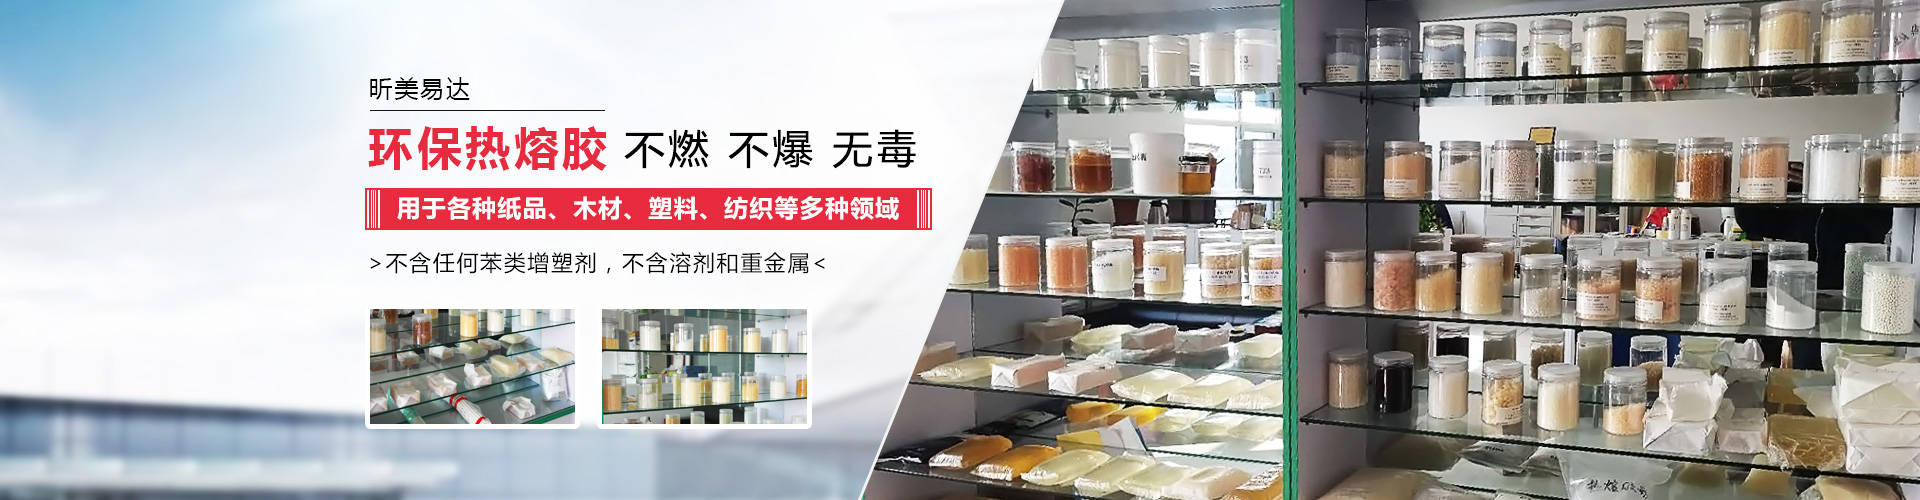 青島昕美易達專業生產熱熔膠,粘合劑等系列產品.